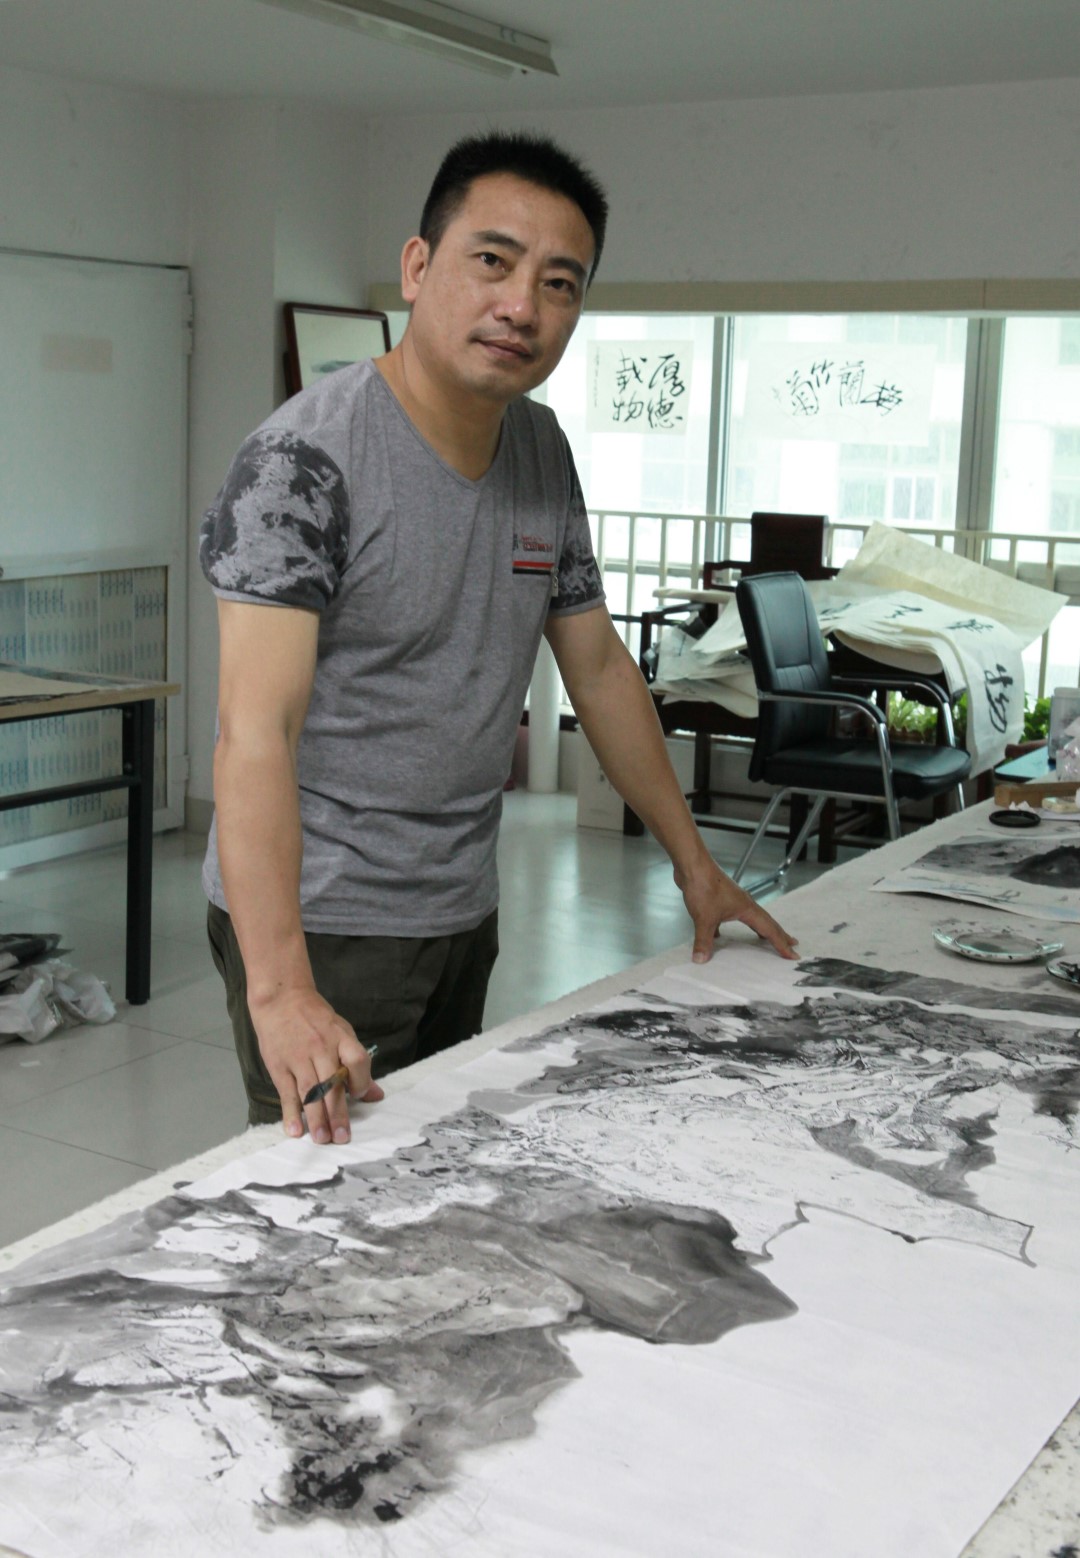 Exposição | Pinturas de Li Zhaoyu a partir de amanhã no Centro UNESCO